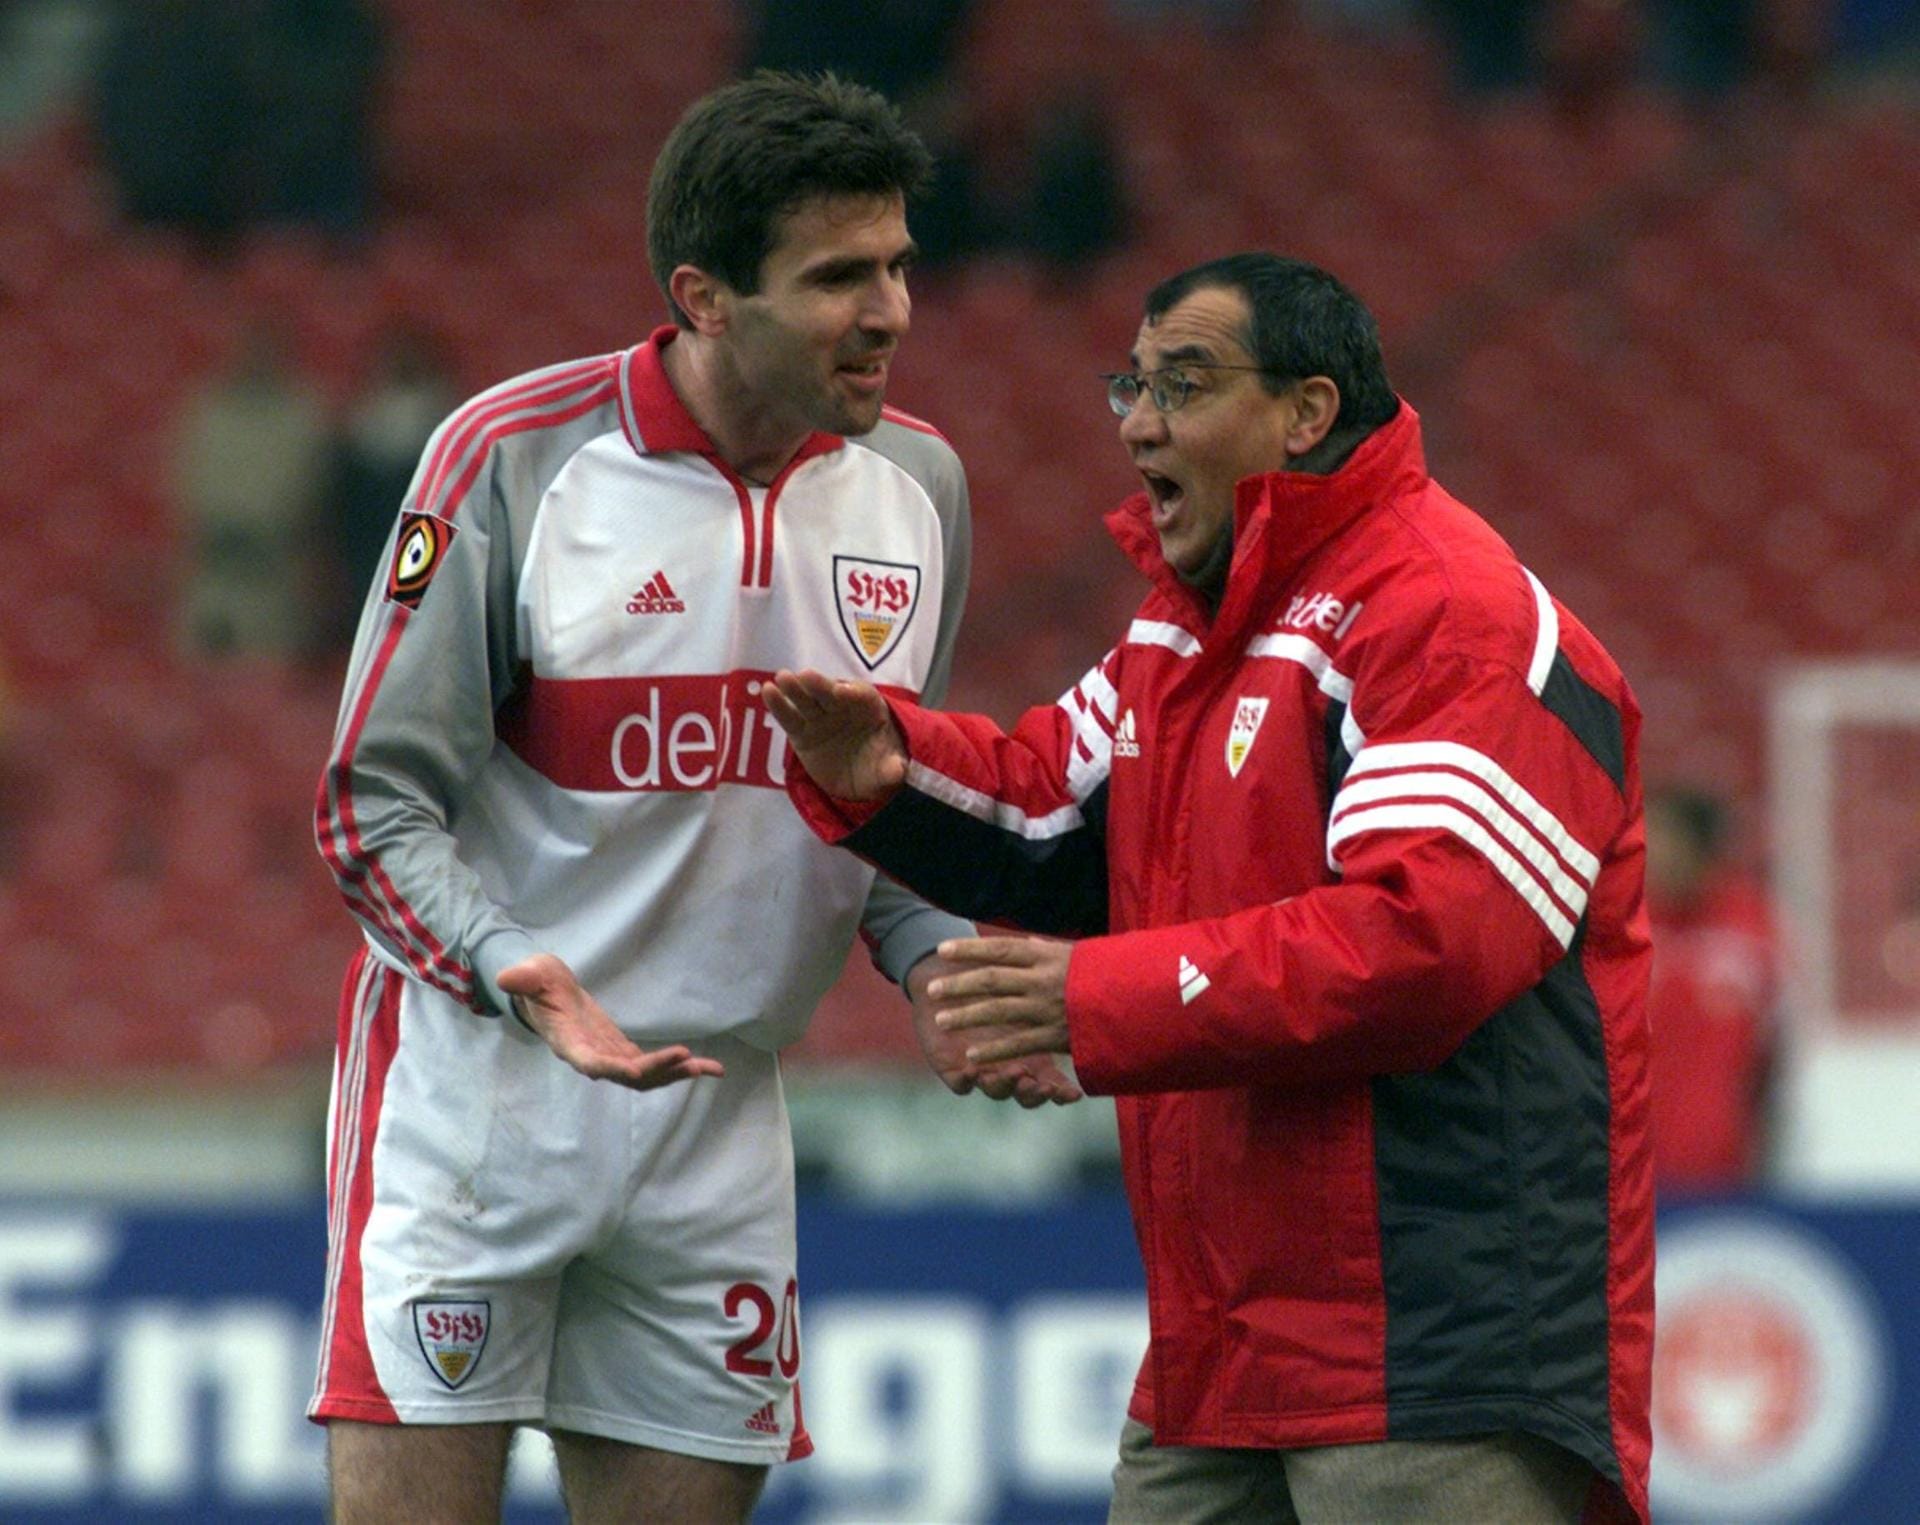 VfB Stuttgart – Februar 2001 bis Mai 2004: Kaum bei der Eintracht entlassen, saß Magath wenige Wochen später schon bei den Schwaben auf der Bank. Dort hatte Magath seine bis dato längste Trainerstation, blieb bis zum Saisonende 2004 und führte den VfB zur Vize-Meisterschaft 2003. Hier diskutiert er intensiv mit seinem Kapitän Zvonimir Soldo.